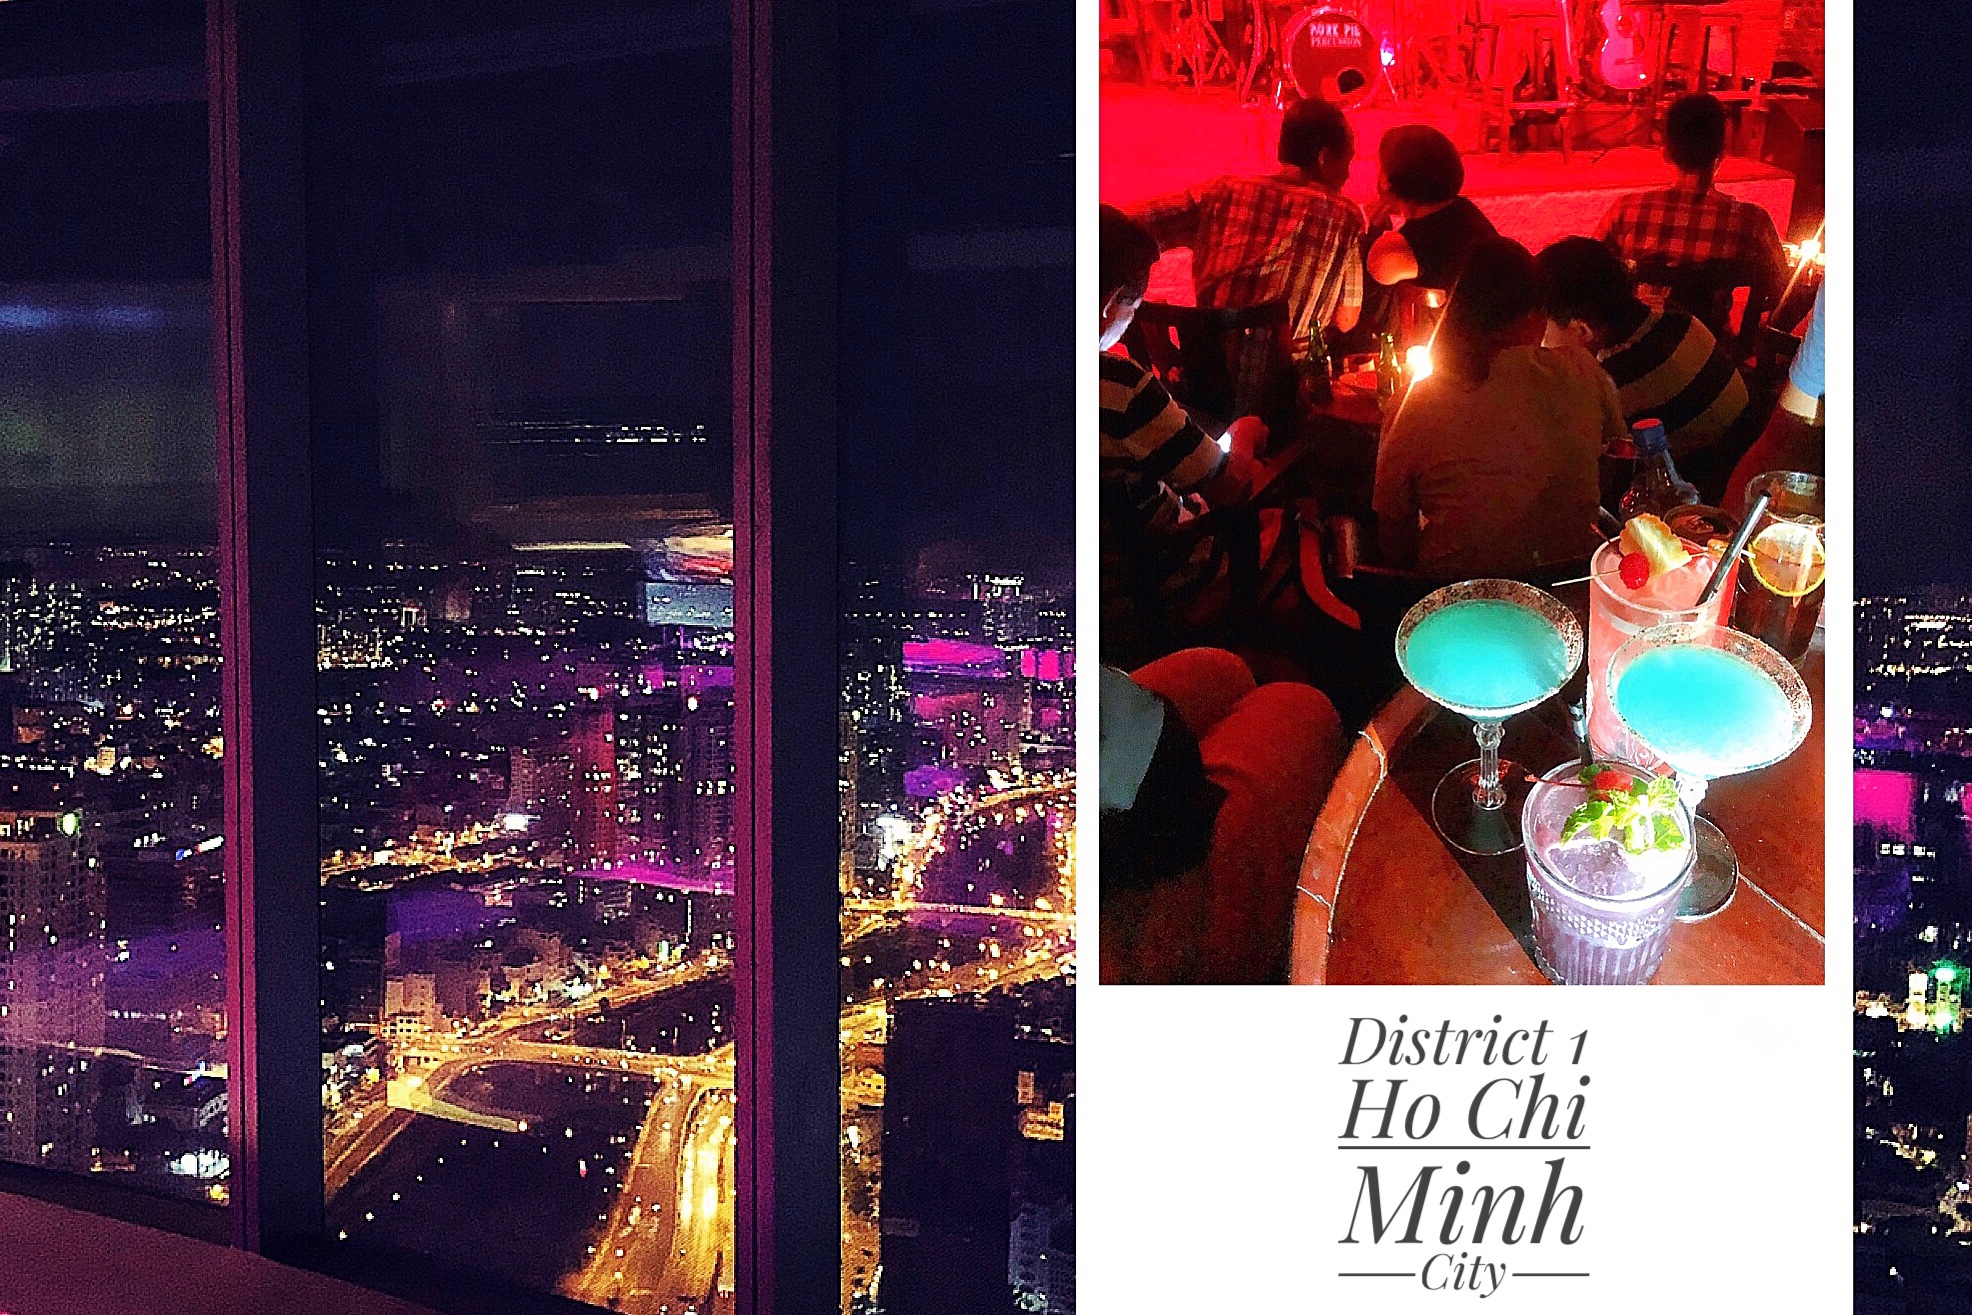 胡志明市 3個夜景點推薦：音樂酒吧、金融塔夜景、西貢河郵輪晚餐 還遇煙火秀!